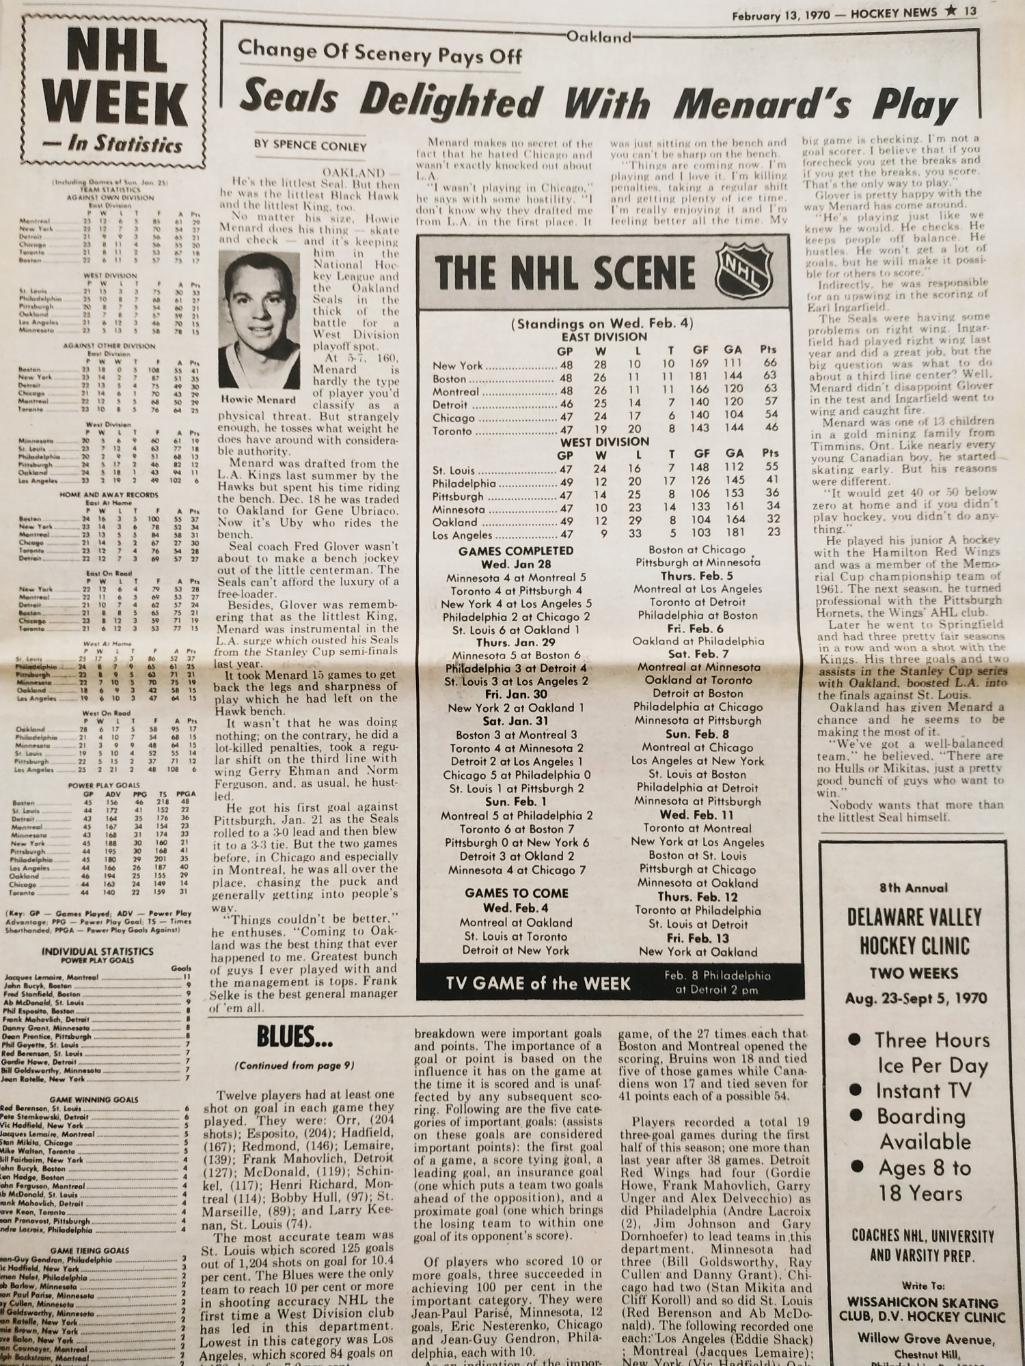 ХОККЕЙ ЖУРНАЛ ЕЖЕНЕДЕЛЬНИК НХЛ НОВОСТИ ХОККЕЯ FEB.13 1970 NHL THE HOCKEY NEWS 6